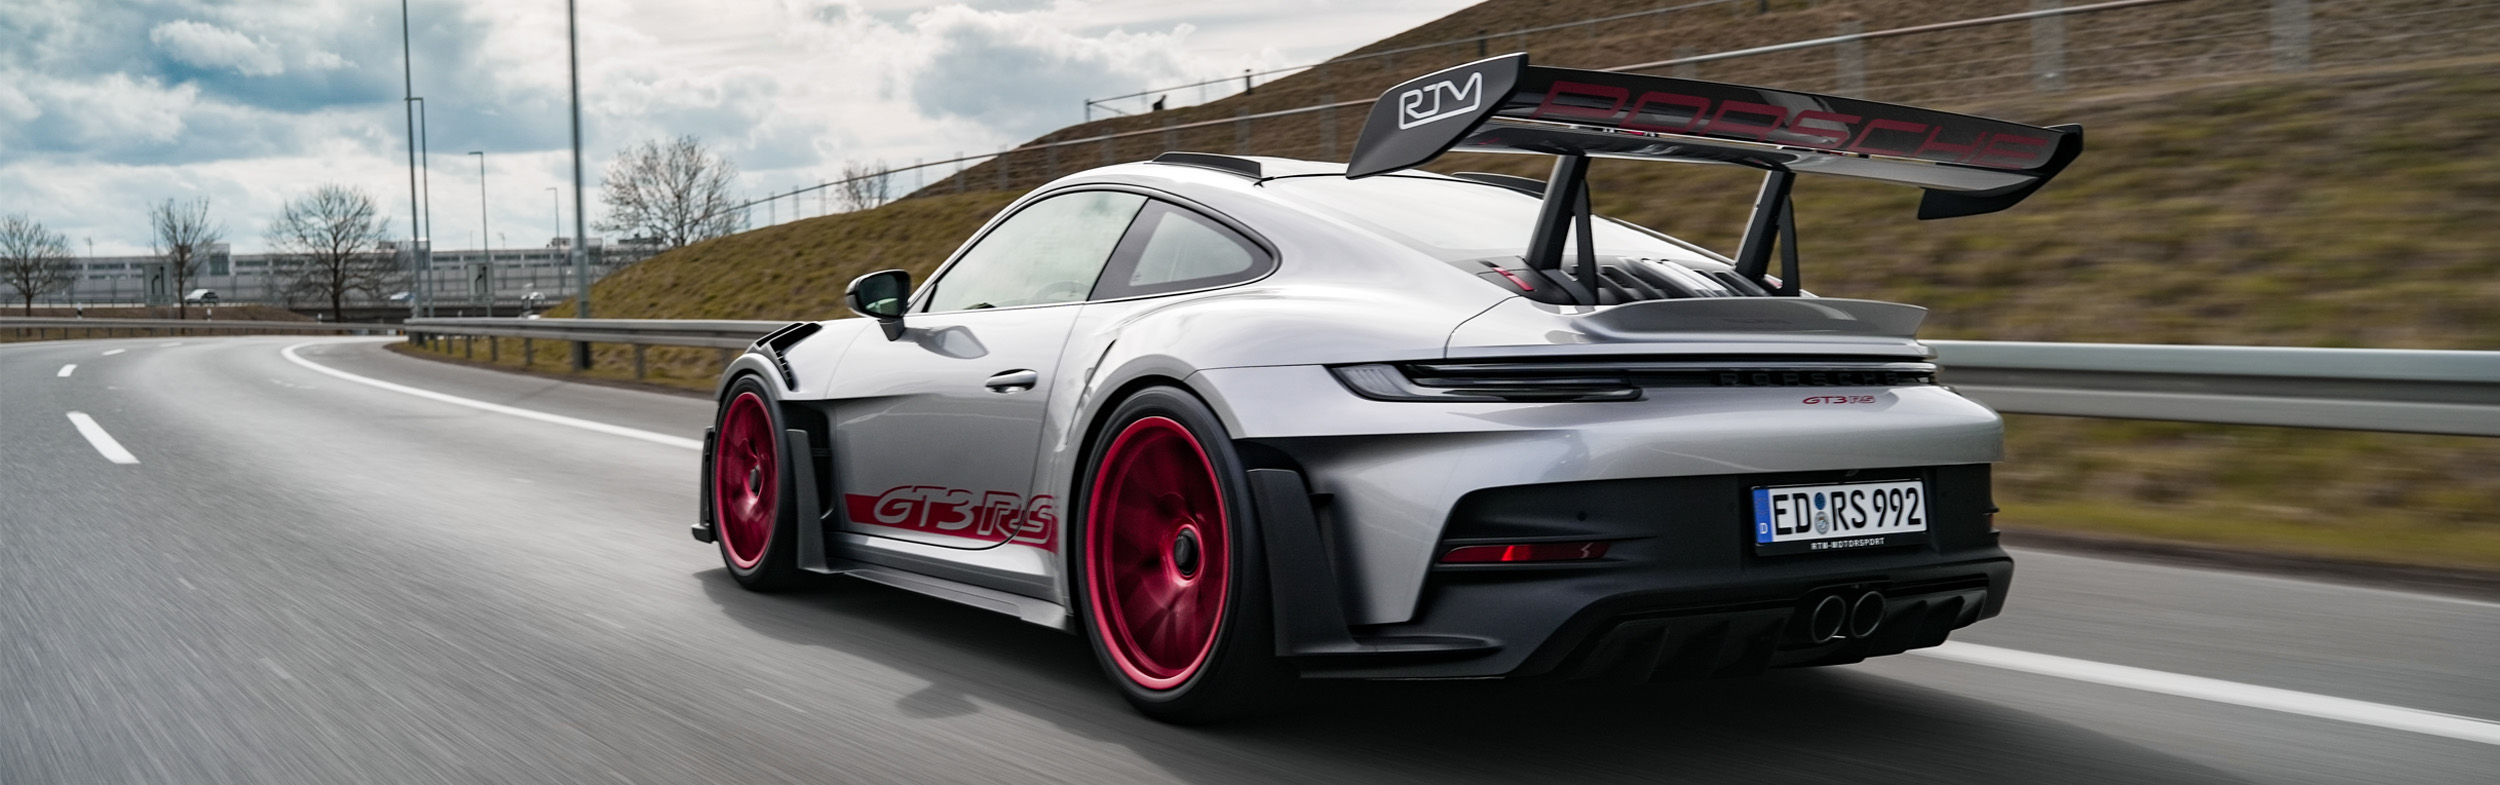 Porsche GT3 RS Motorsport